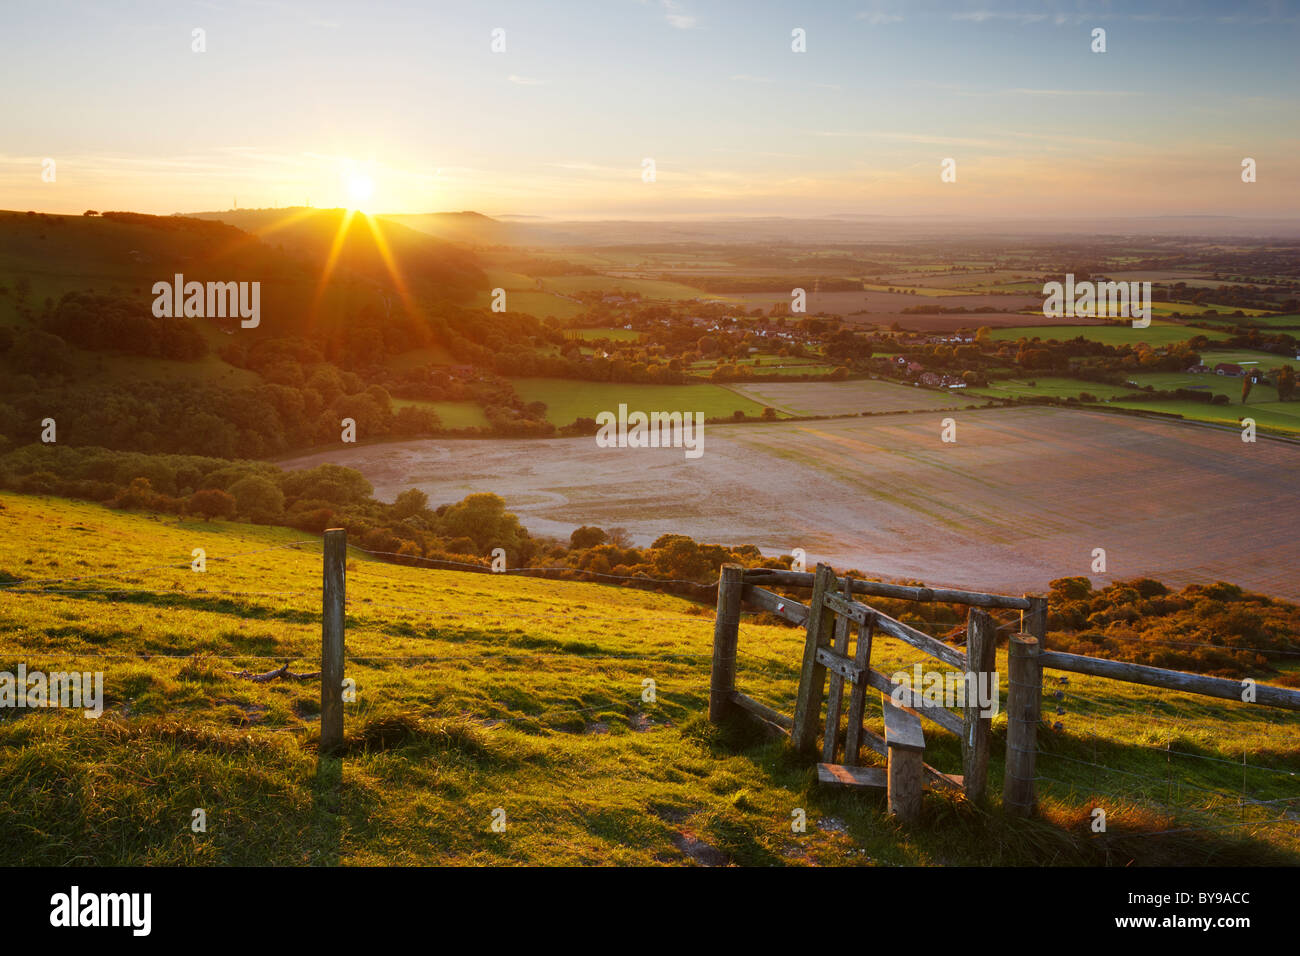 Stile avec vues sur la campagne du Sussex de l'Ouest. Le soleil du soir faisant sa descente derrière les collines ondulantes. Banque D'Images